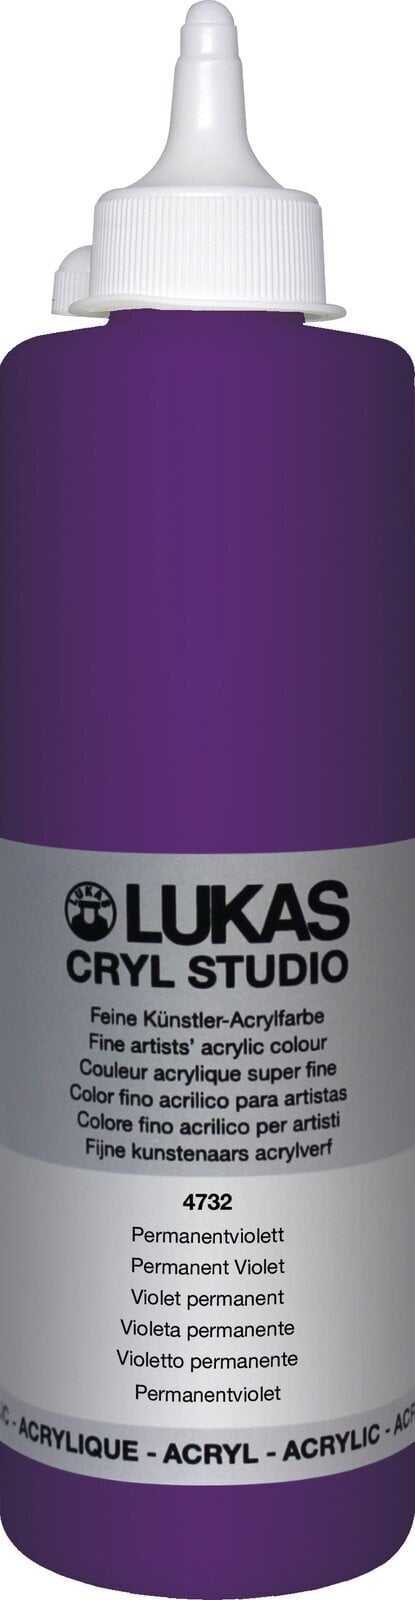 Peinture acrylique Lukas Cryl Studio Peinture acrylique 500 ml Permanent Violet